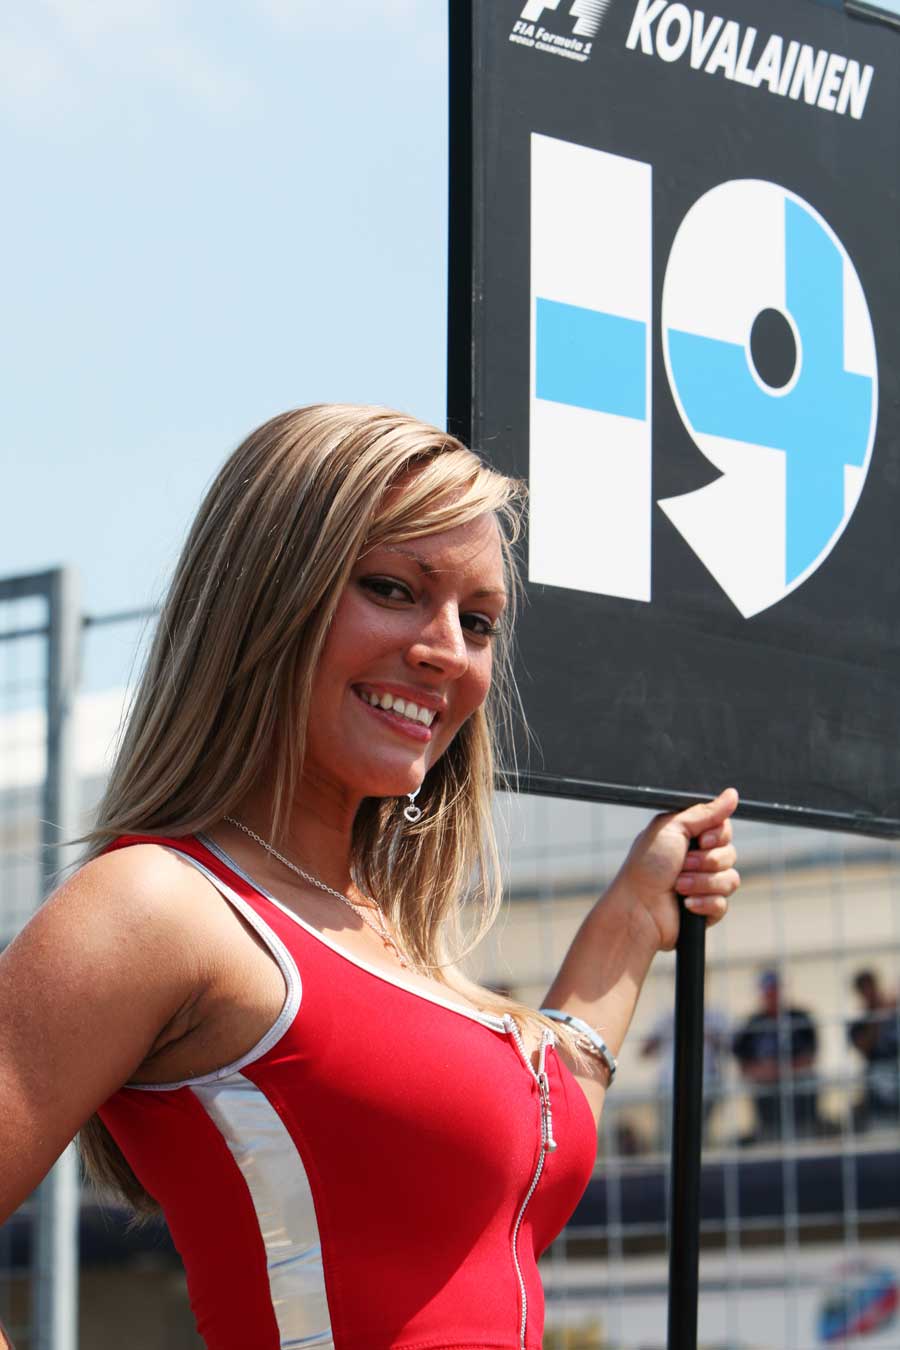 Heikki Kovalainen's grid girl on race day